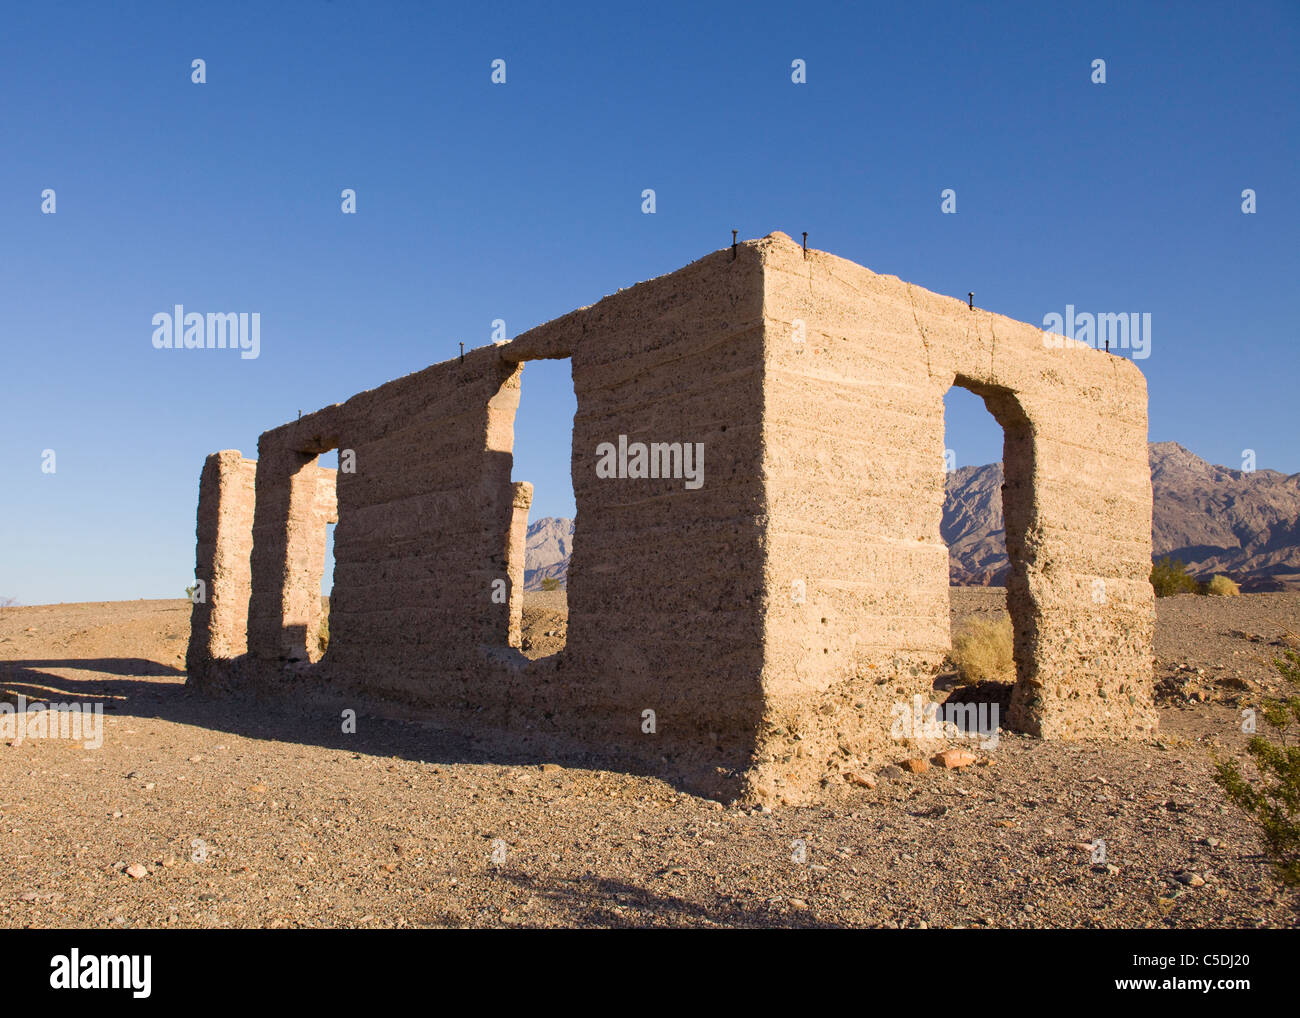 Un vecchio rudere del deserto - Deserto Mojave, California USA Foto Stock